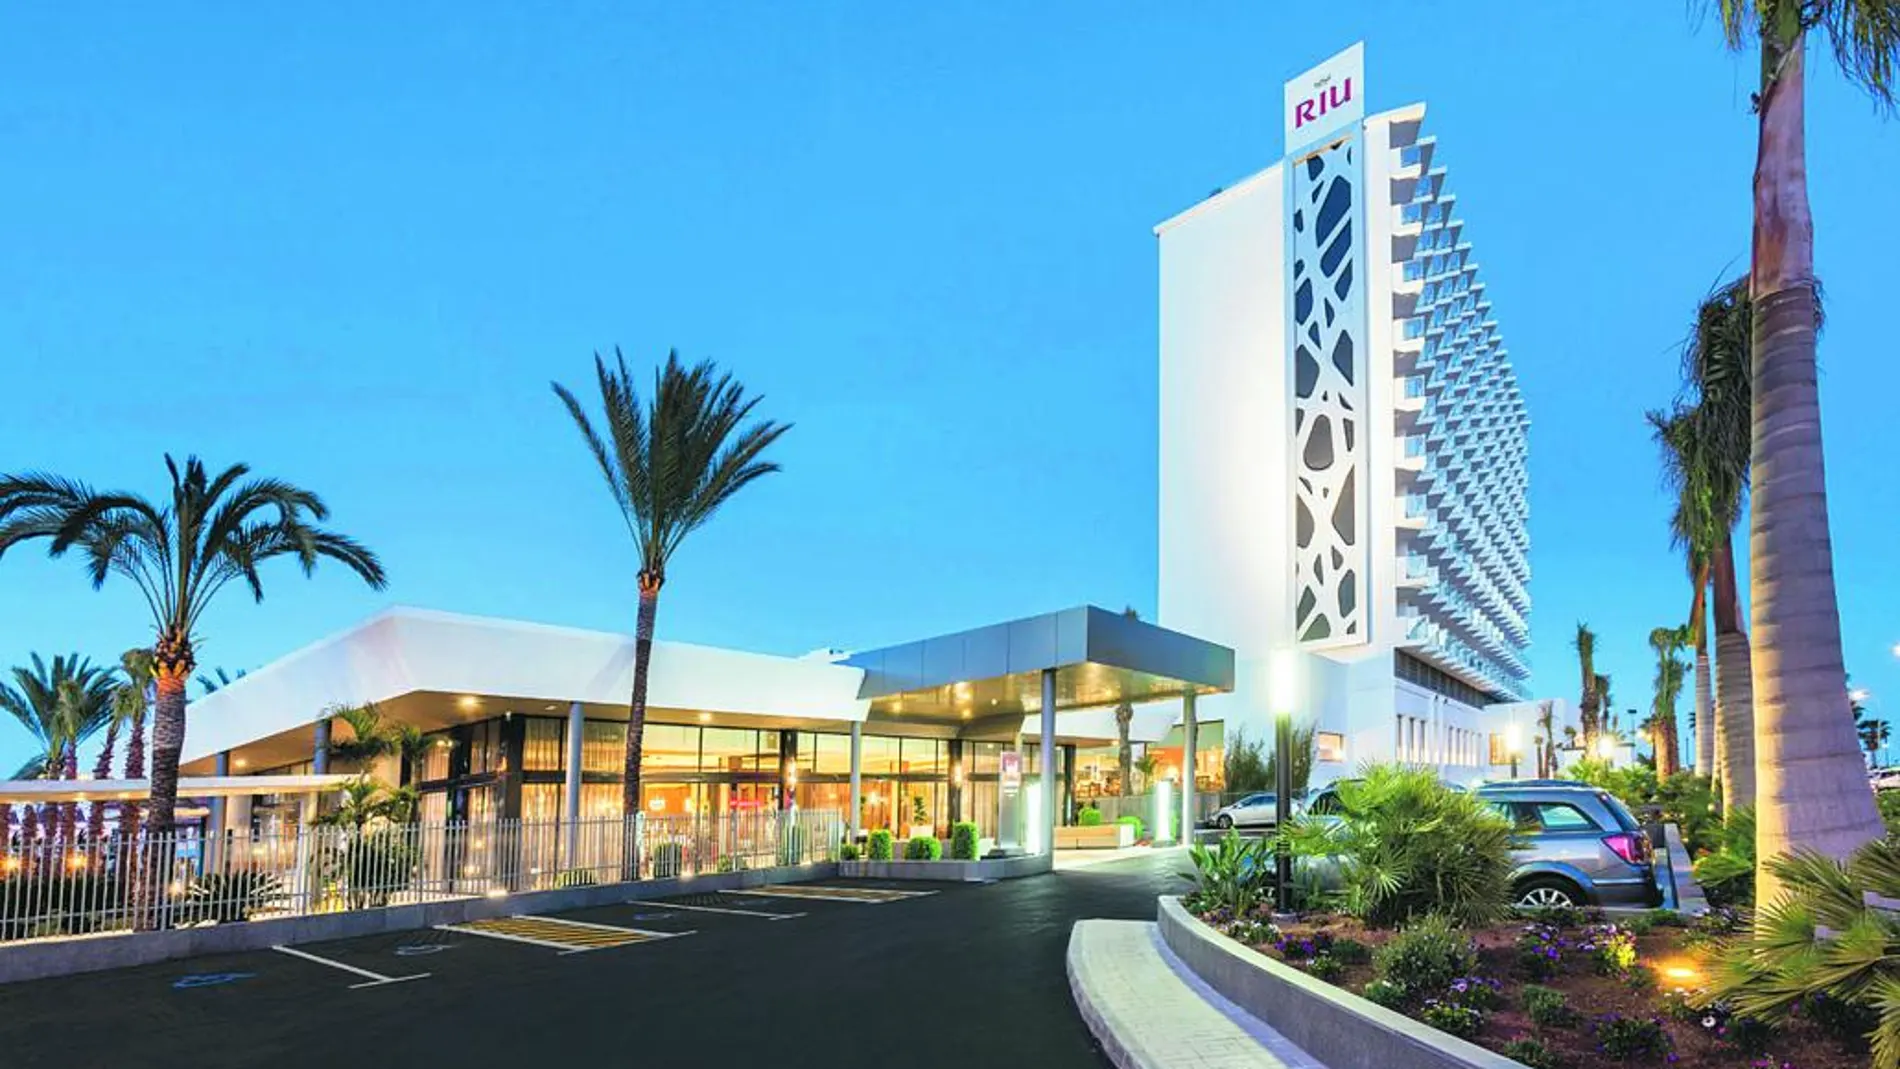 El Club Hotel Riu Costa del Sol, situado en Torremolinos, se inauguró recientemente. Ha supuesto una inversión de 25 millones de euros